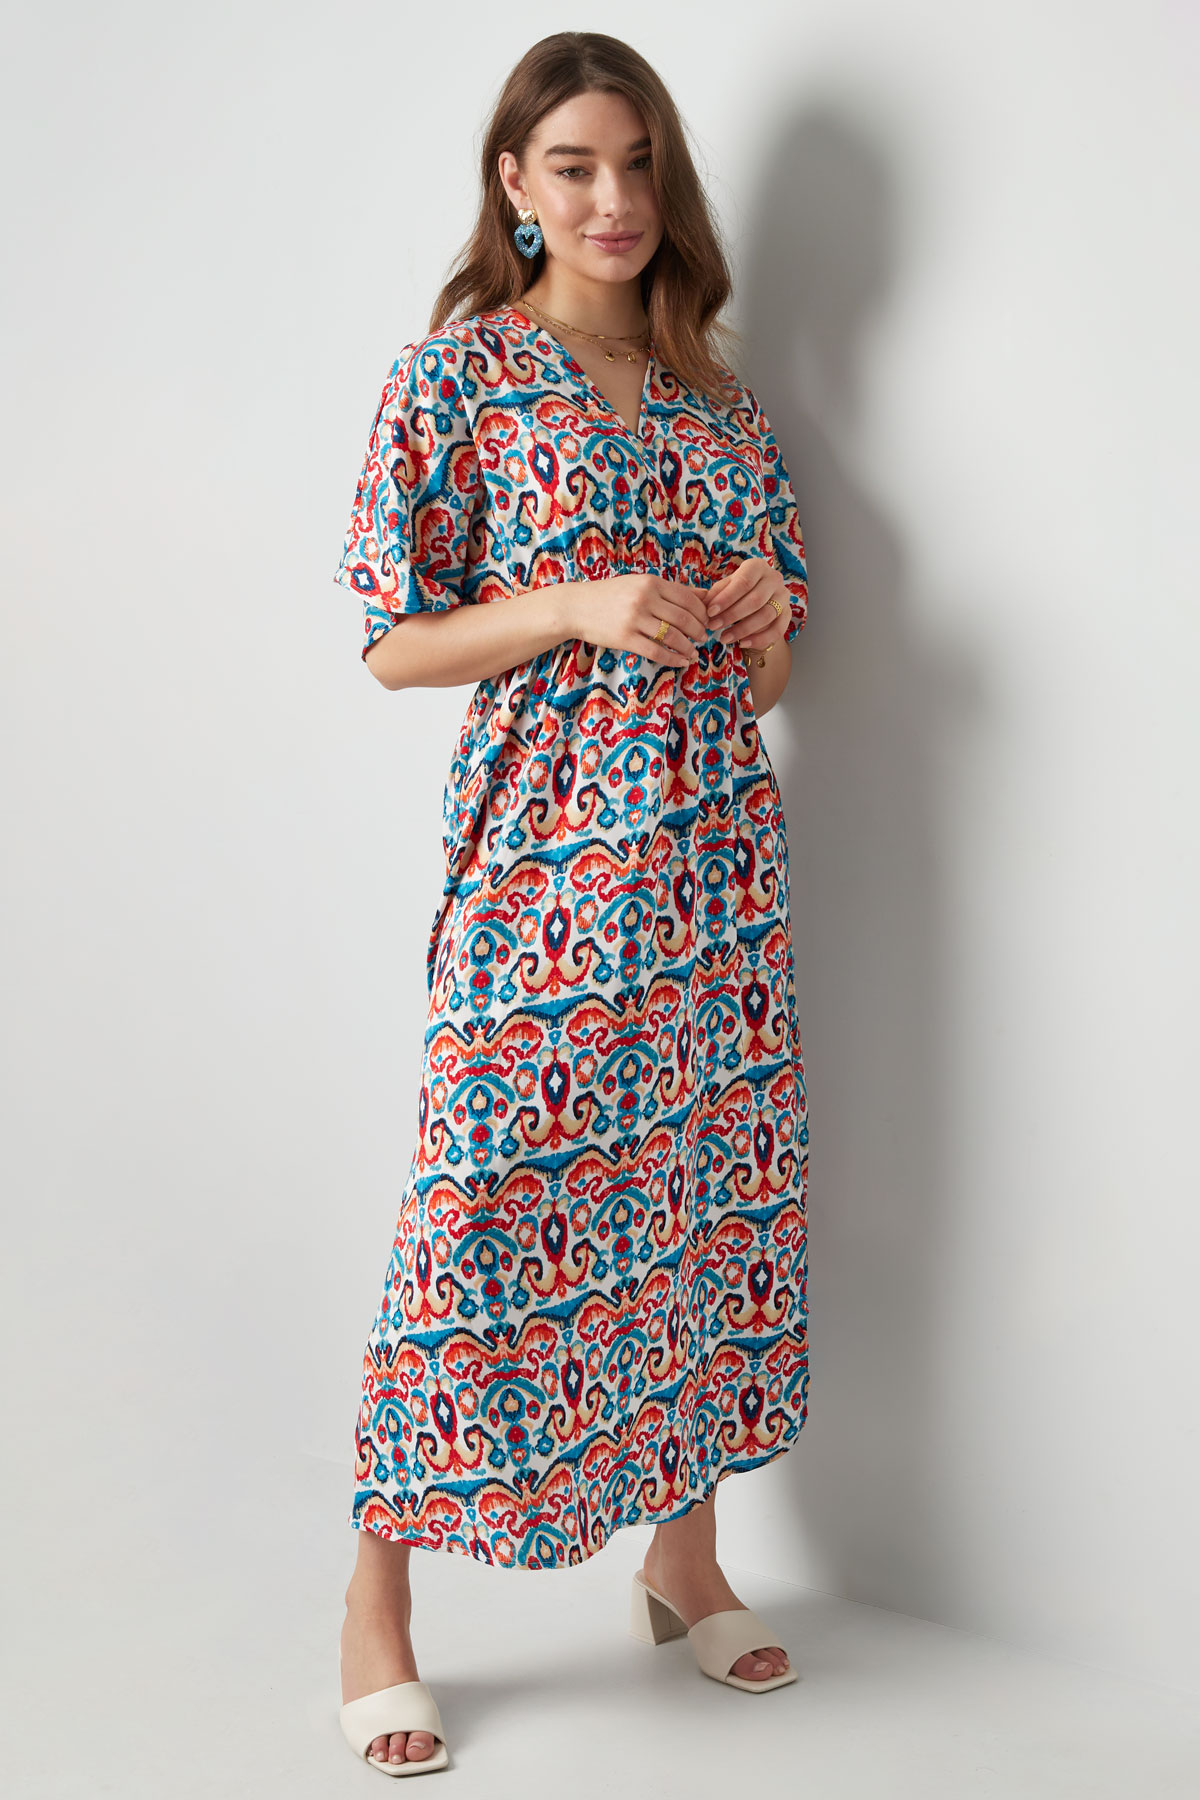 Langes Kleid mit Print - Rot/Blau - S Bild6